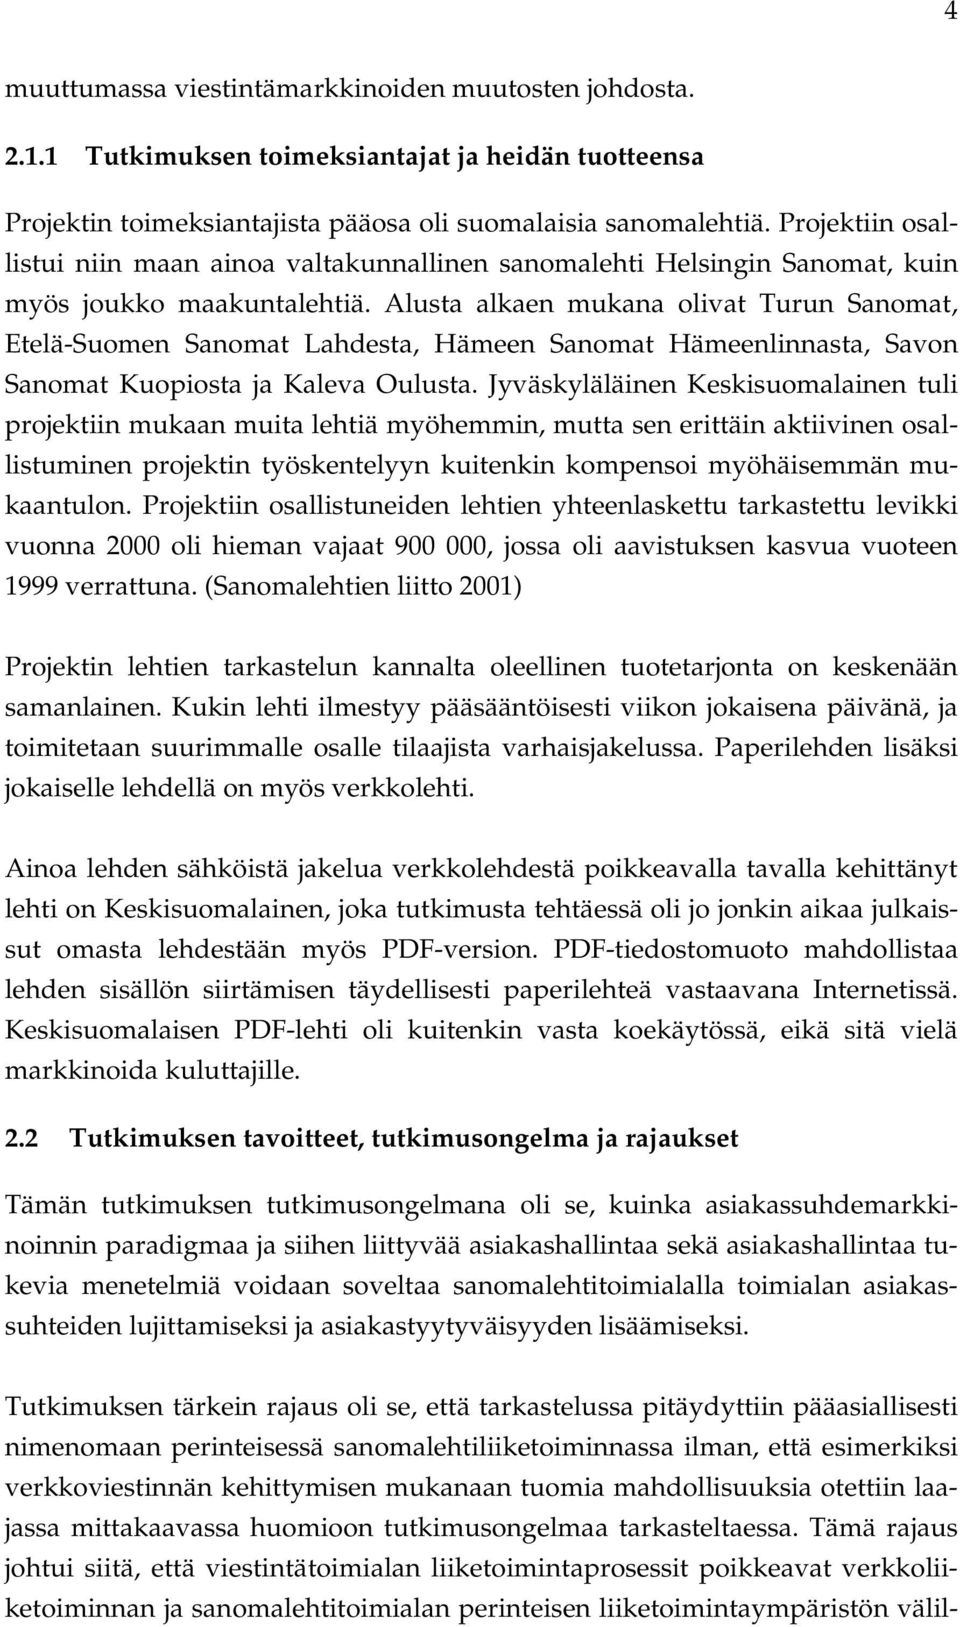 Alusta alkaen mukana olivat Turun Sanomat, Etelä-Suomen Sanomat Lahdesta, Hämeen Sanomat Hämeenlinnasta, Savon Sanomat Kuopiosta ja Kaleva Oulusta.